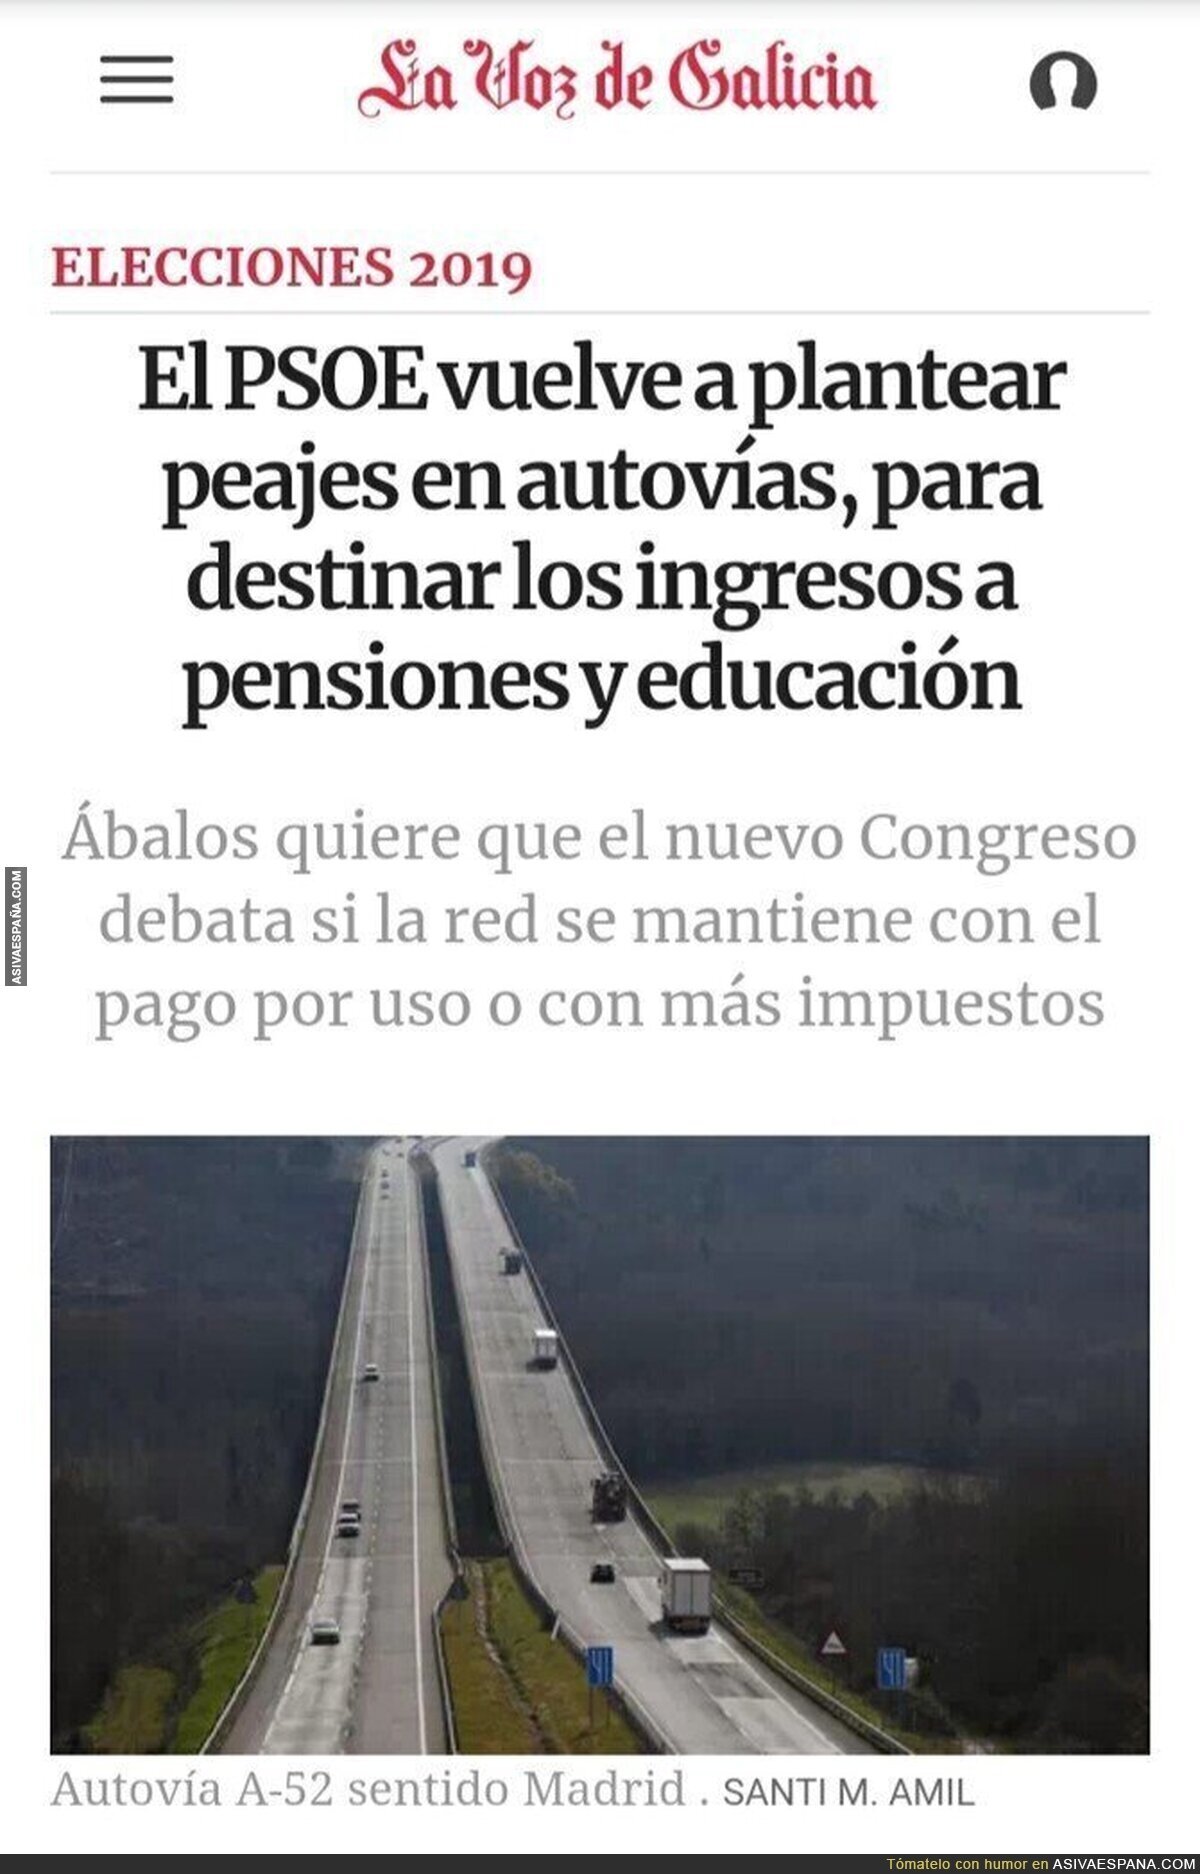 Disfrutad los votantes del PSOE que no sóis tan ricos como Quique Peinado